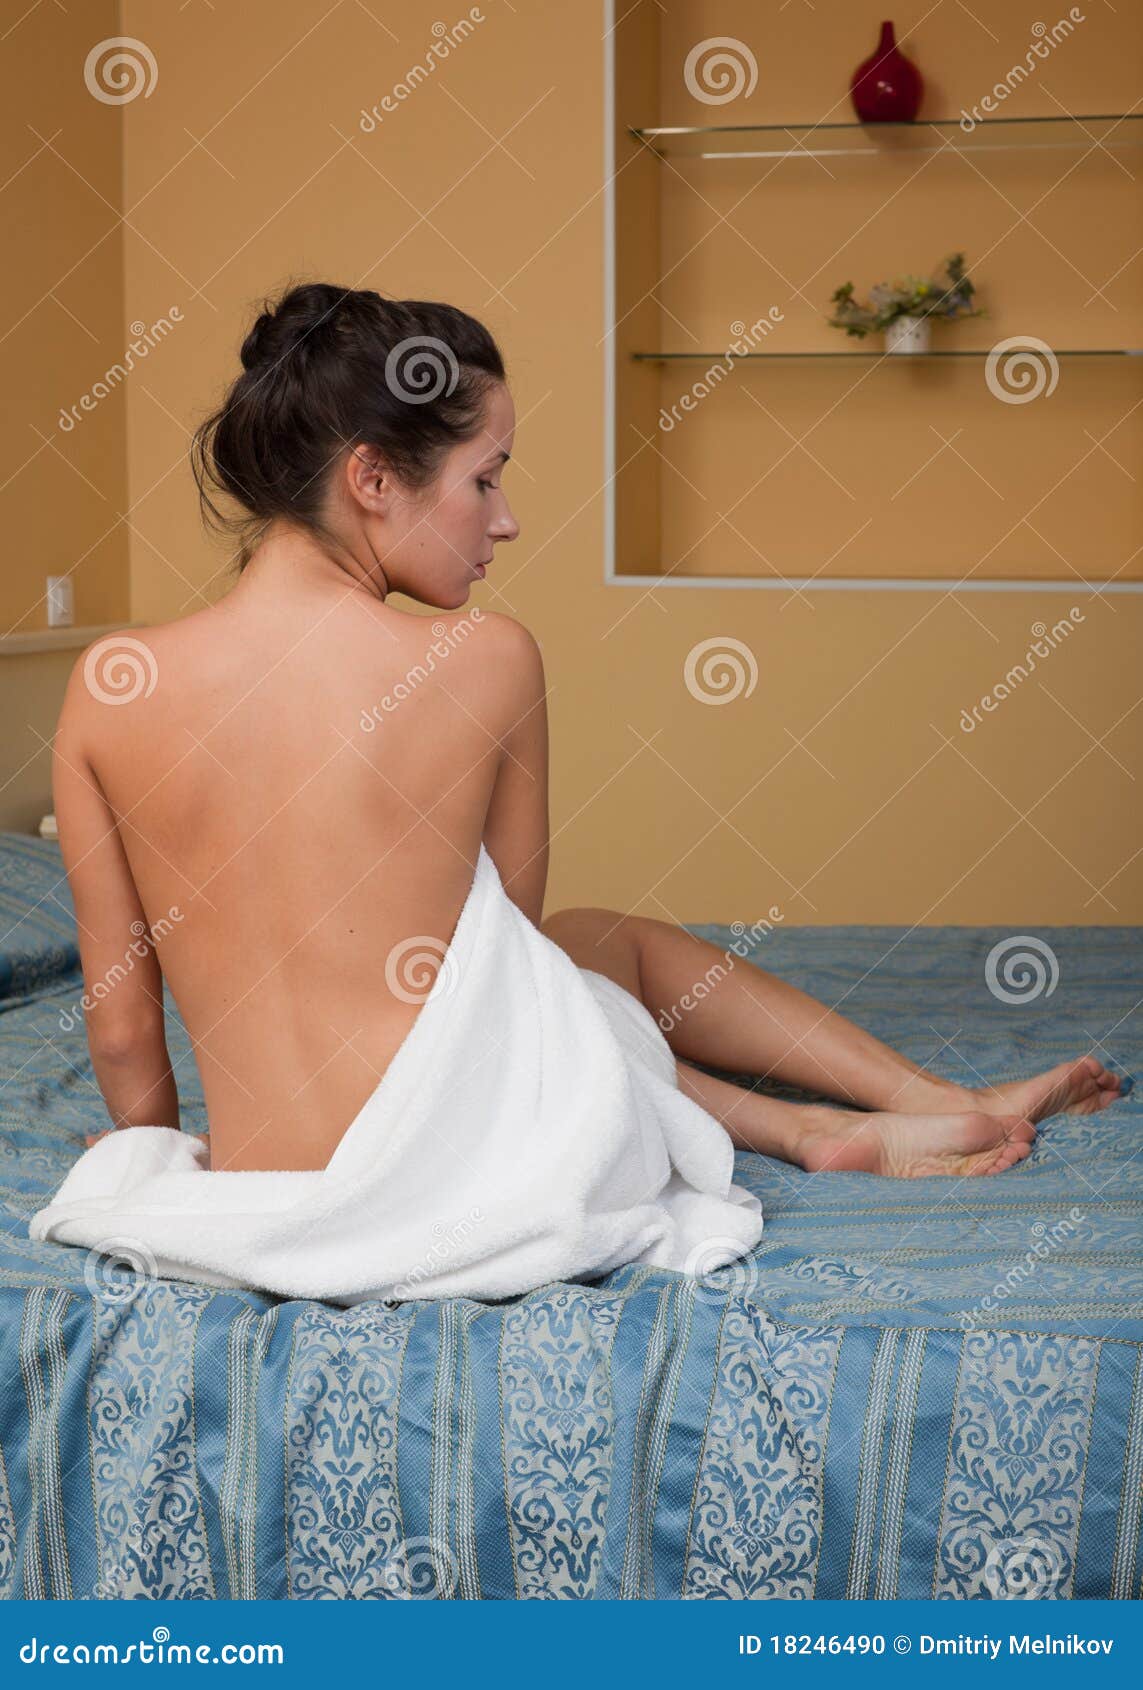 Отчим после душа. Женщина в полотенце домашнее. Девушка в полотенце на кровати. Женщина в полотенце сидит. Девушка в полотенце после душа.